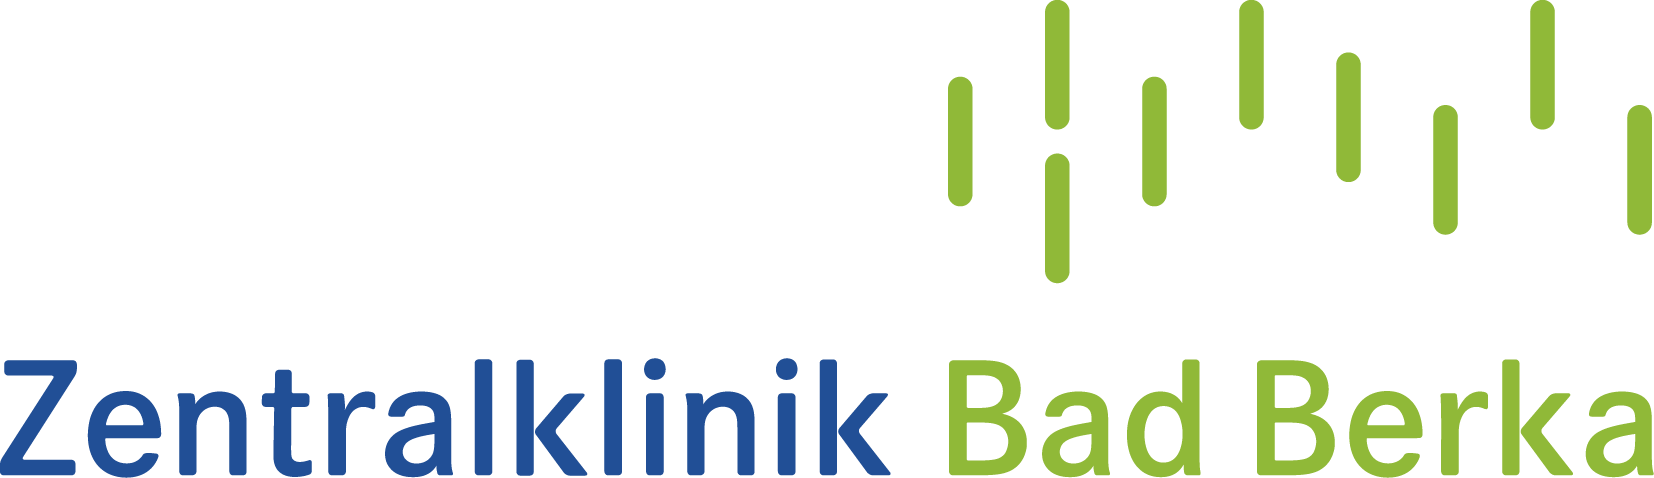 logo_badBerka